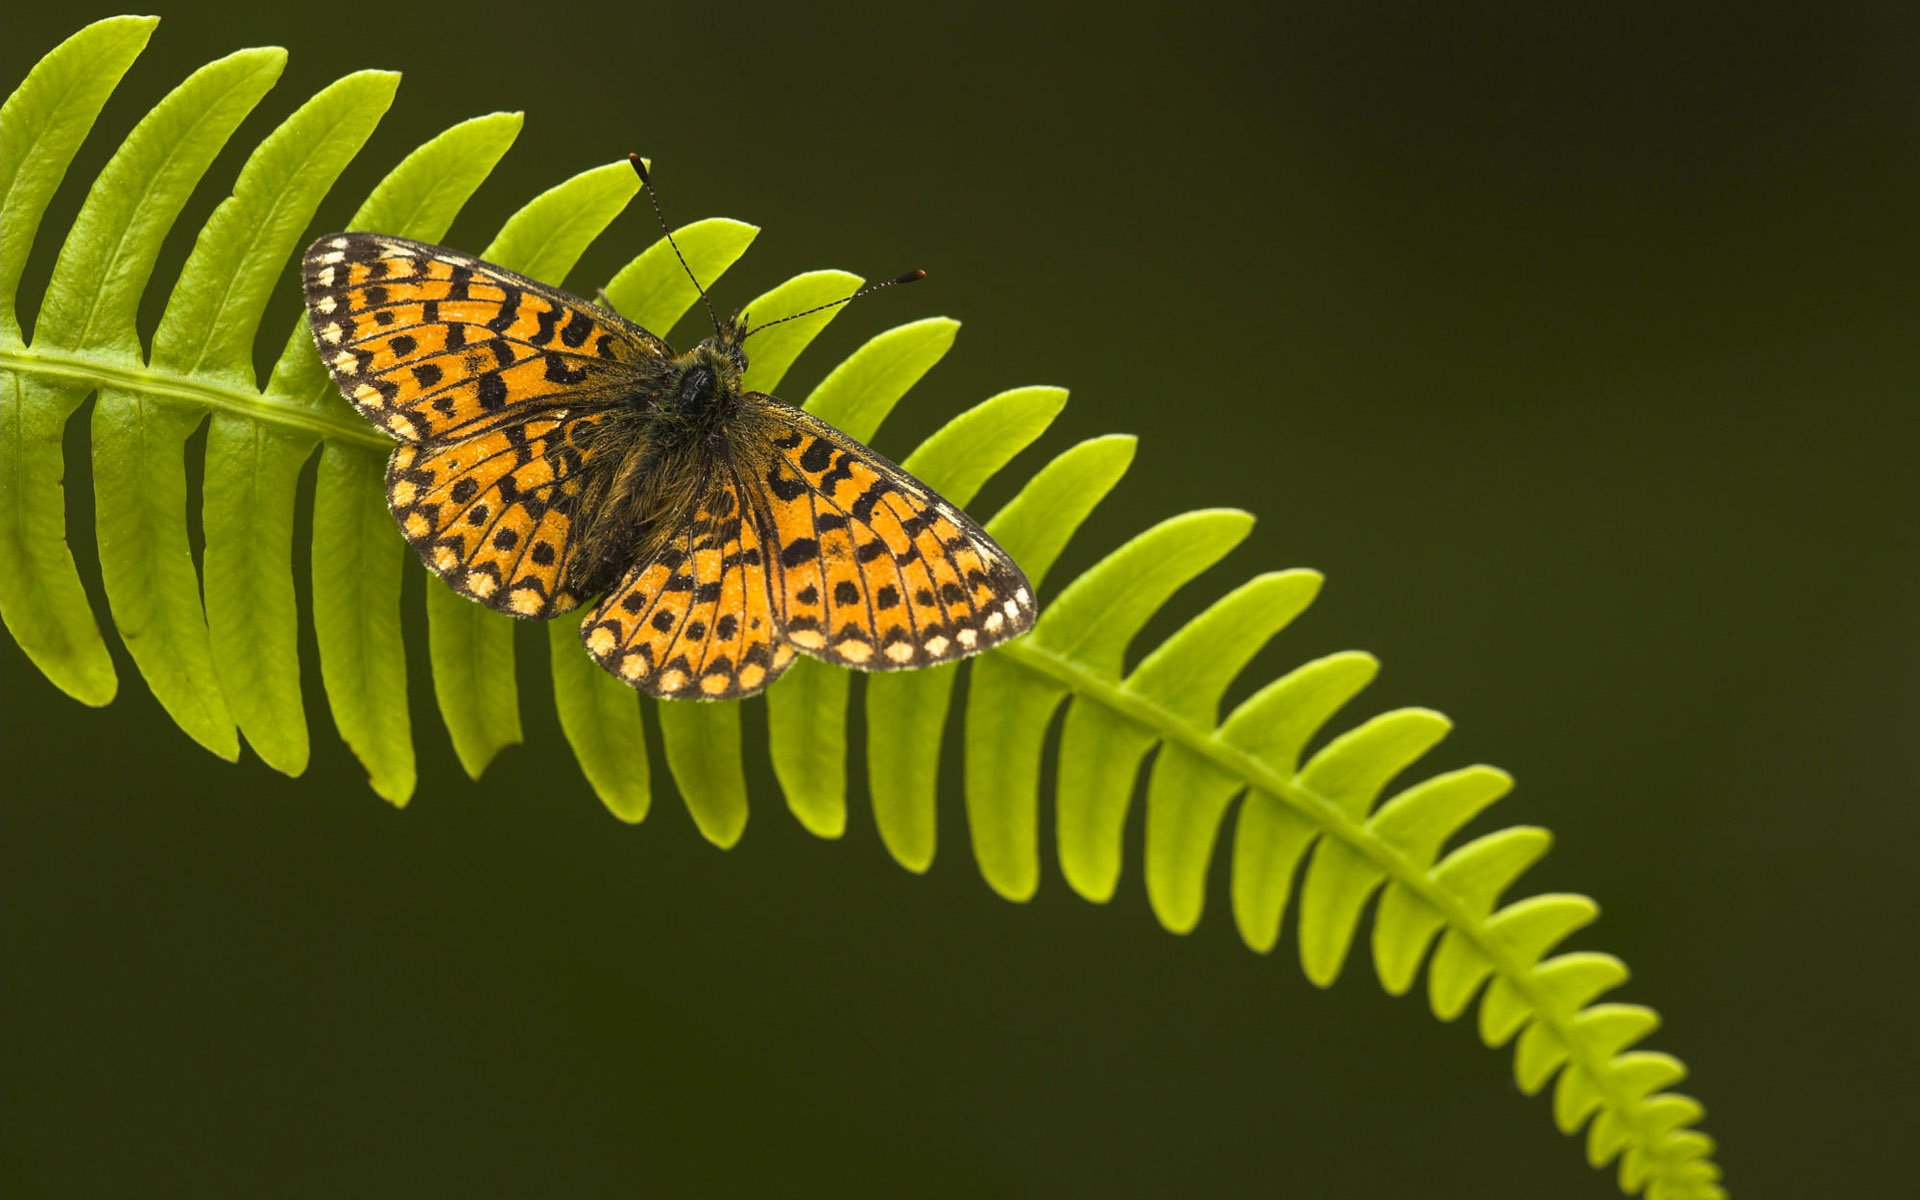 insects, ferns, butterflies - desktop wallpaper